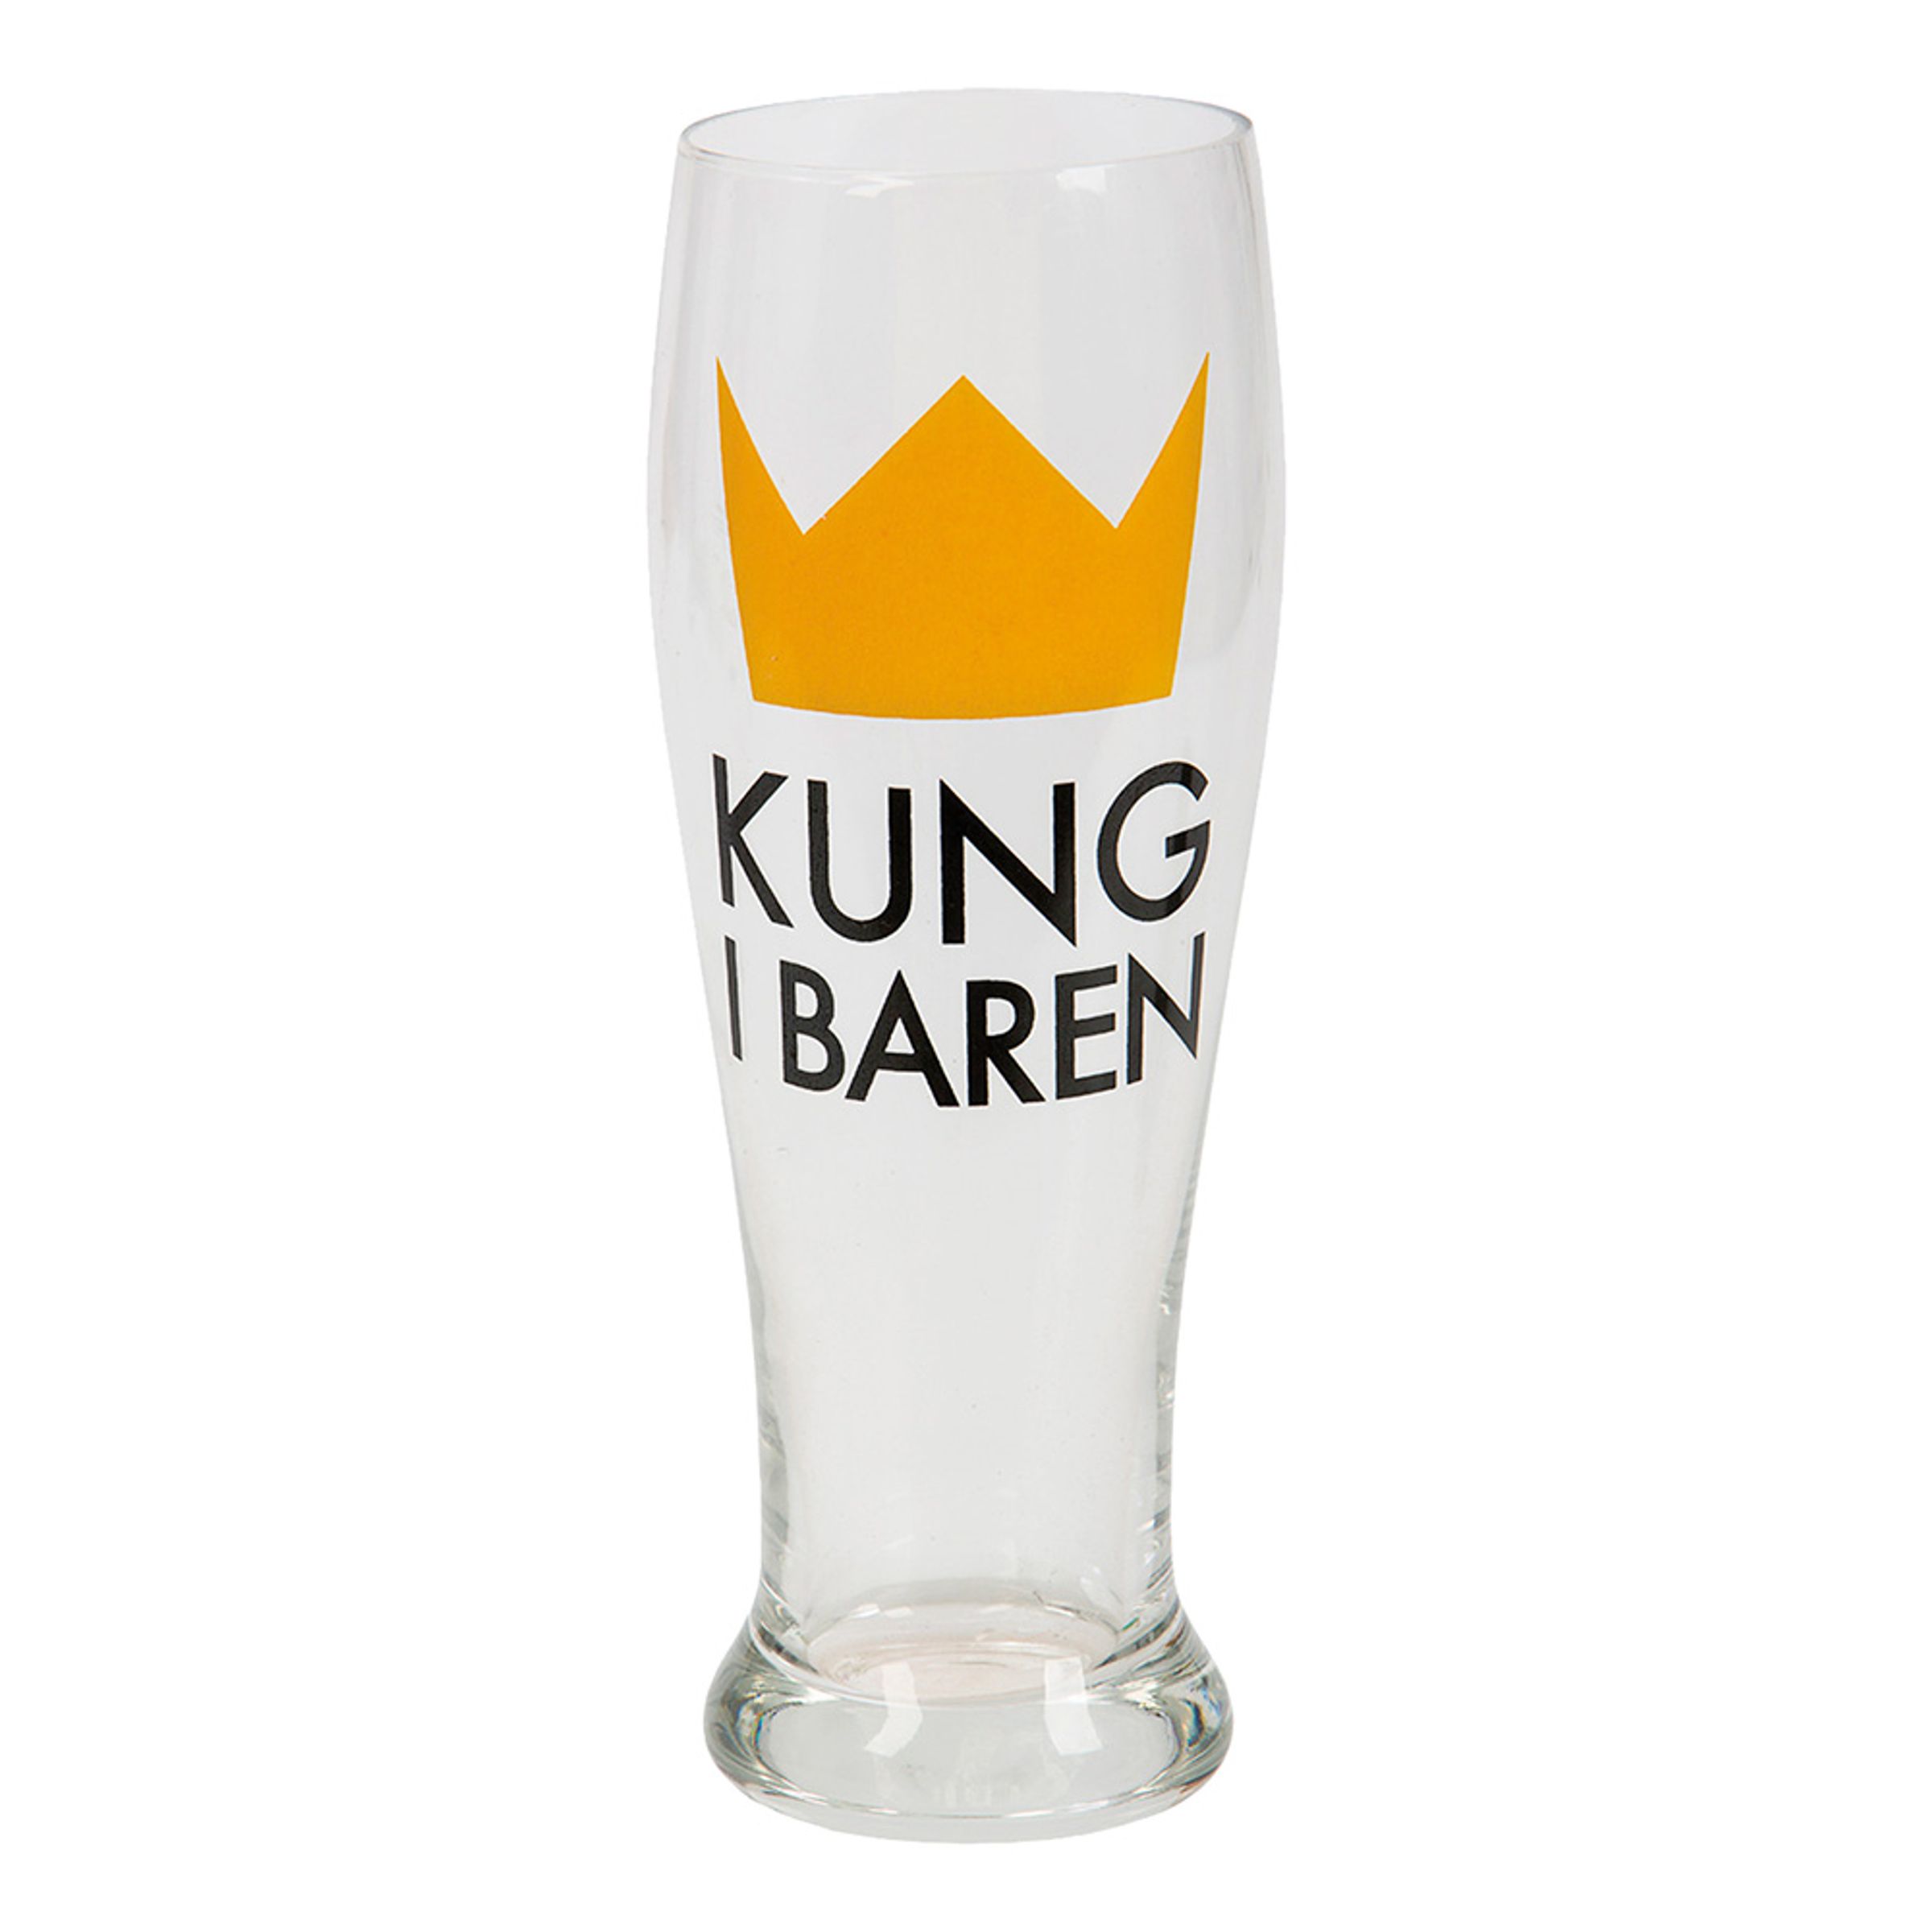 Ölglas Kung i Baren